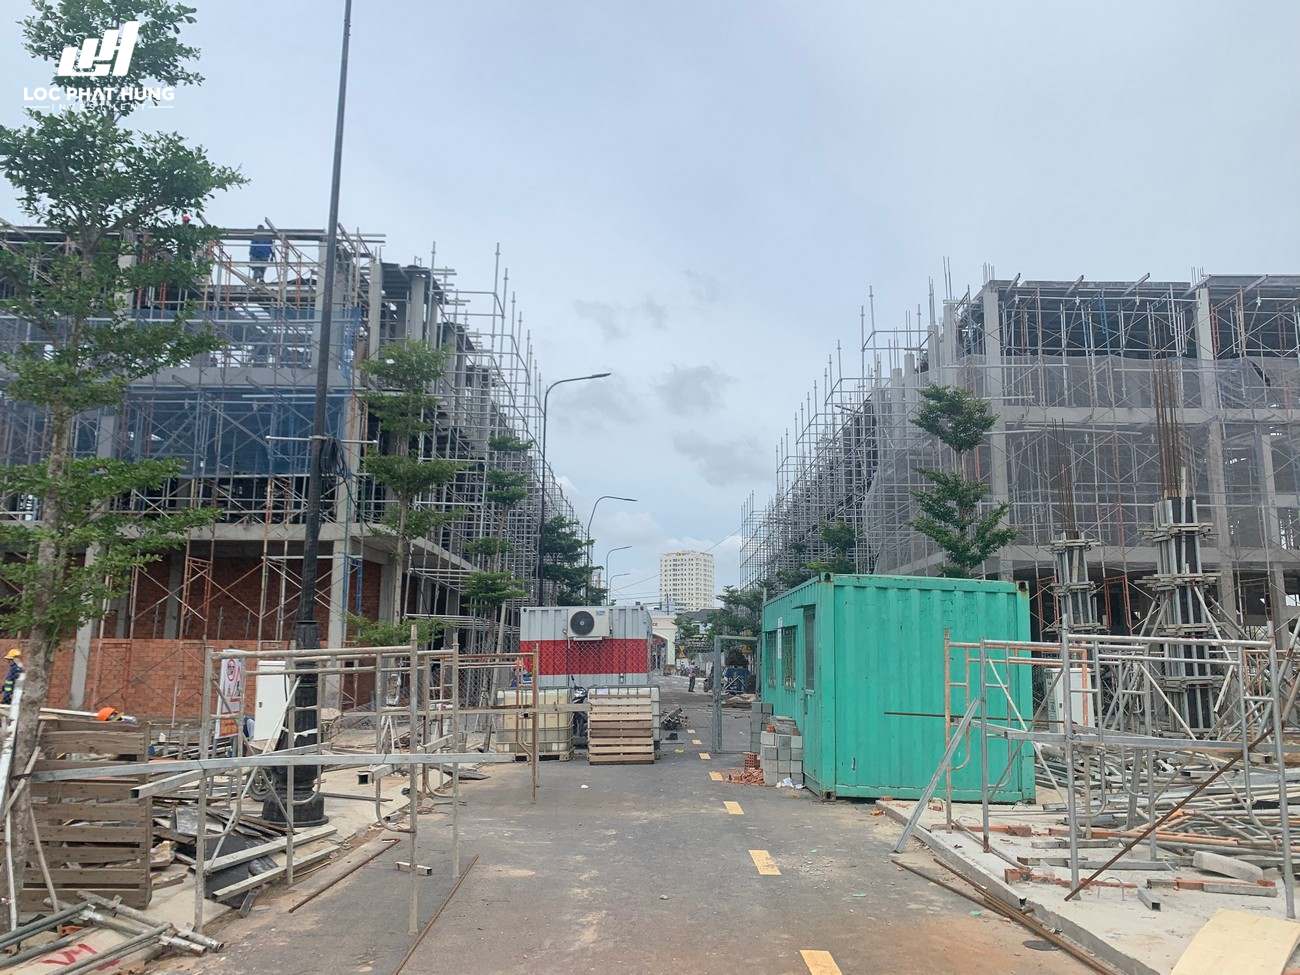 Tiến độ dự án đất nền nhà phố Icon Central Bình Dương 28/08/2020 chủ đầu tư Phú Hồng Thịnh